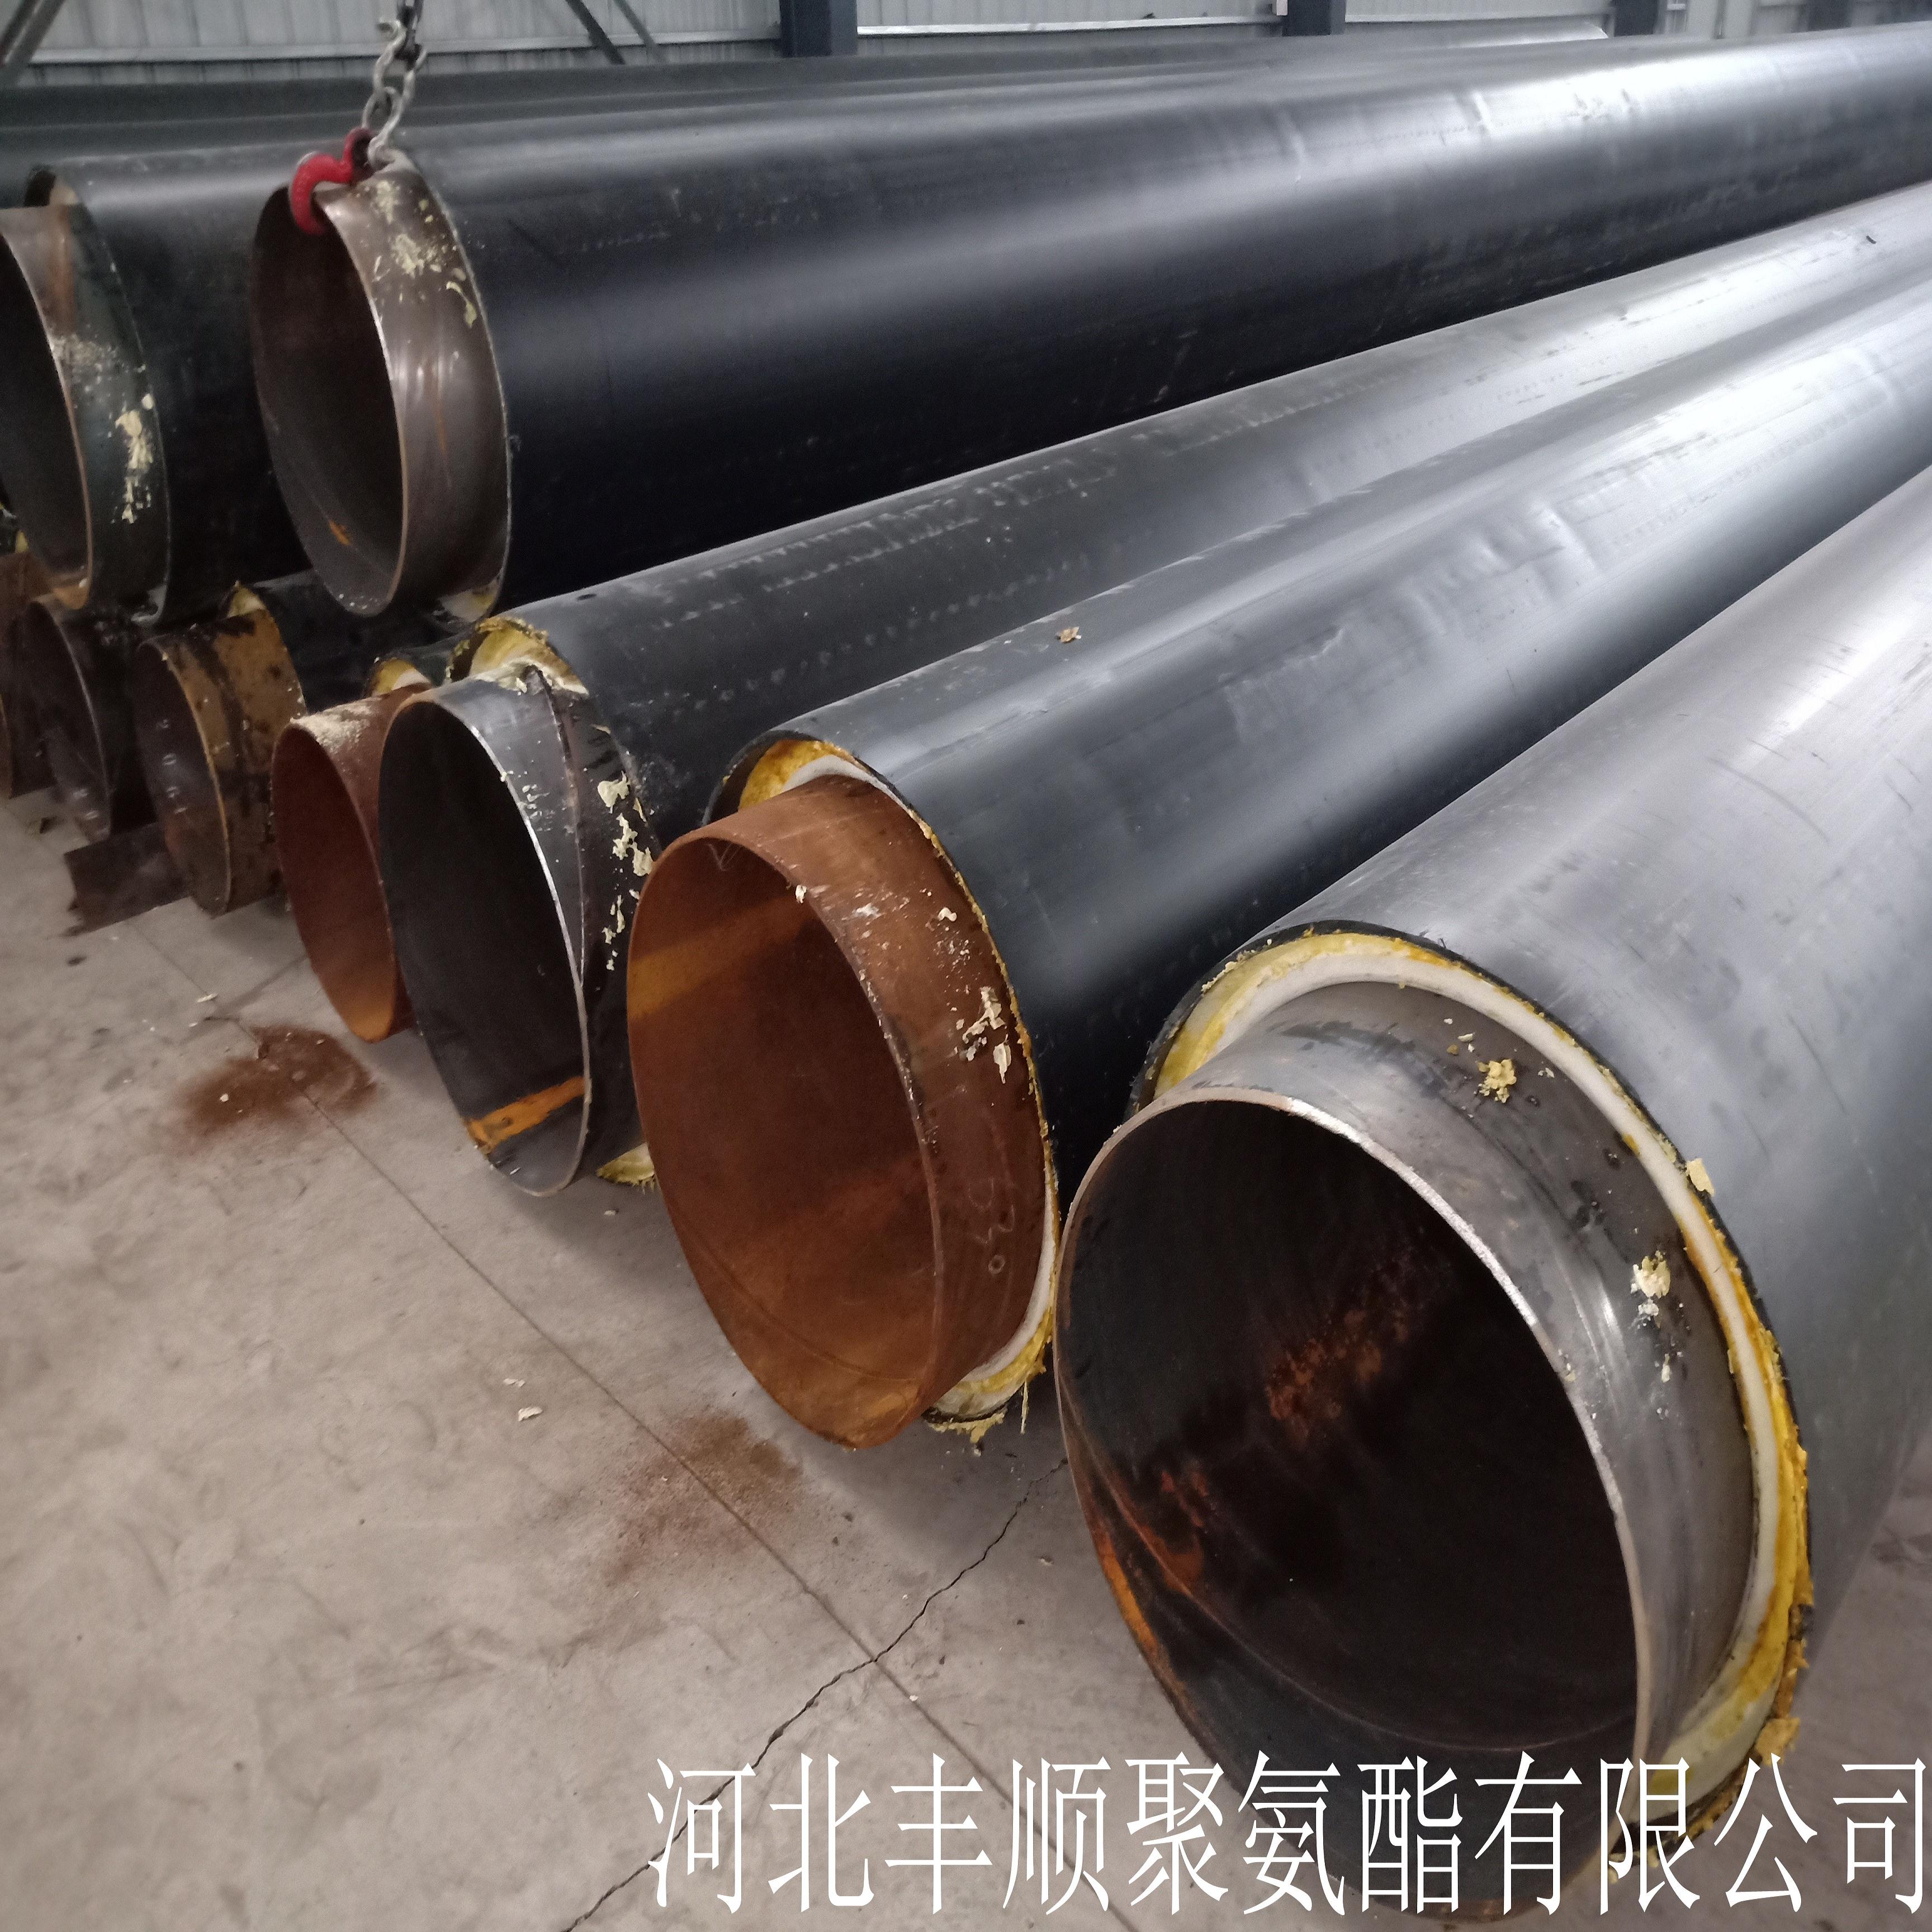 生产聚氨酯热水保温管 天津北辰DN100聚氨酯保温管厂家